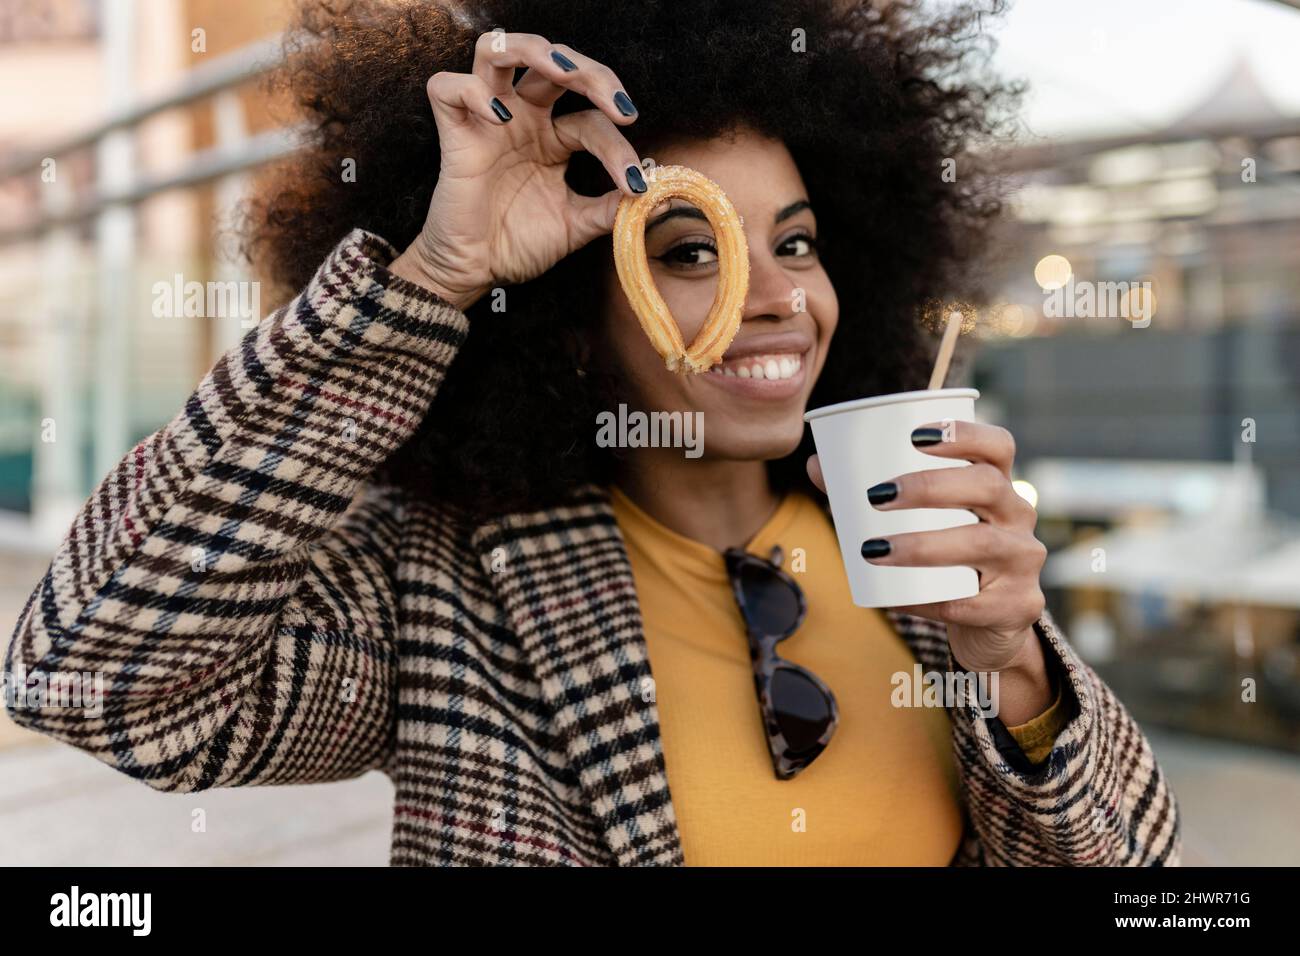 Mujer sonriente con churro con taza desechable Foto de stock